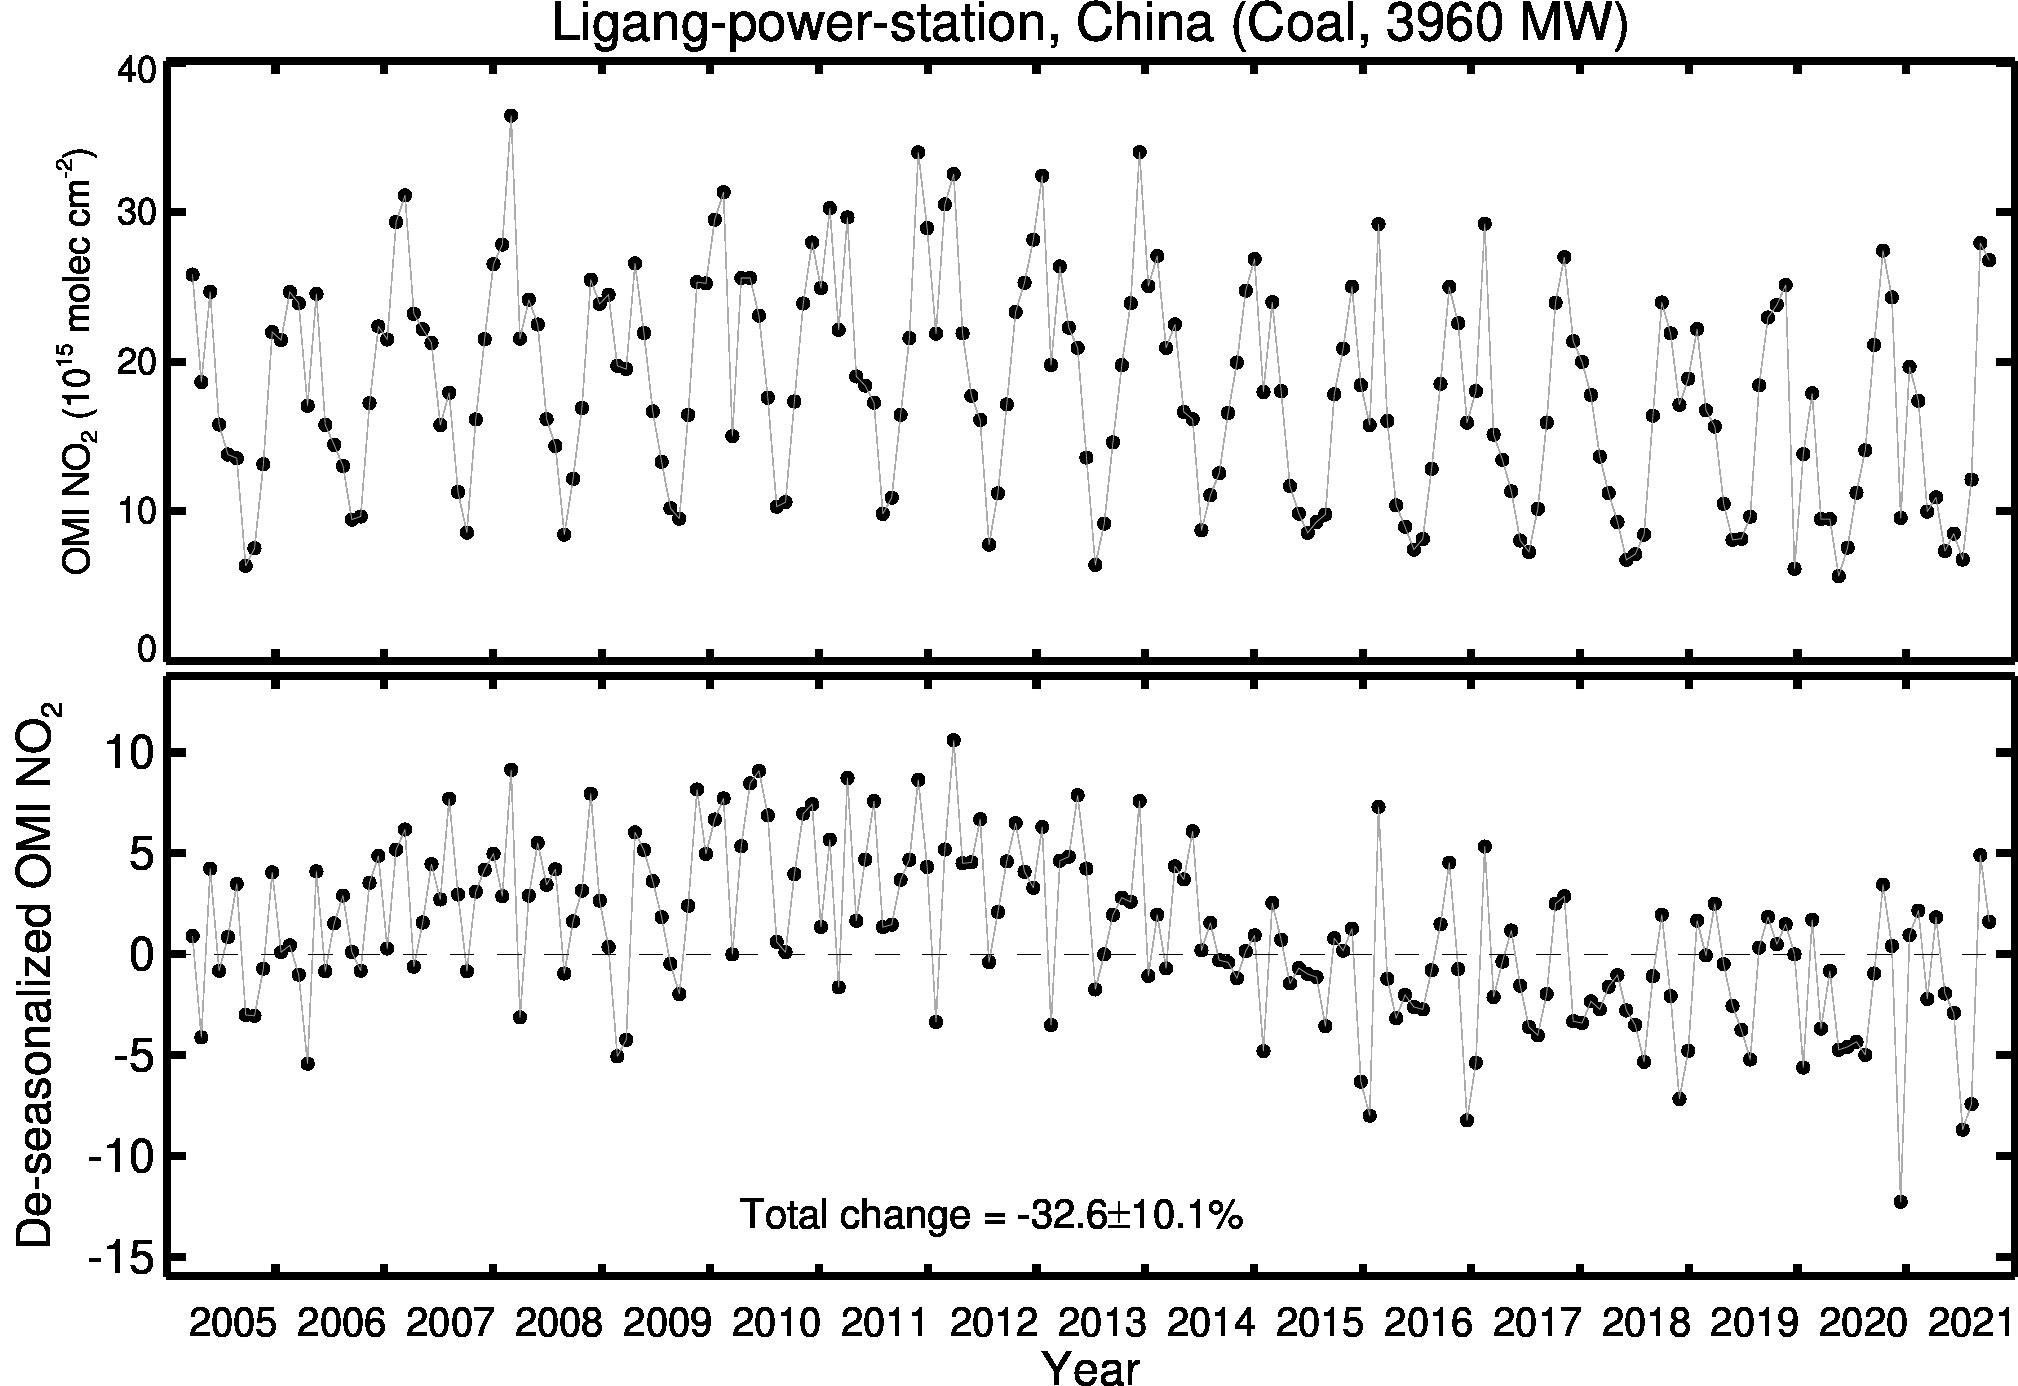 Ligang power station Line Plot 2005-2021